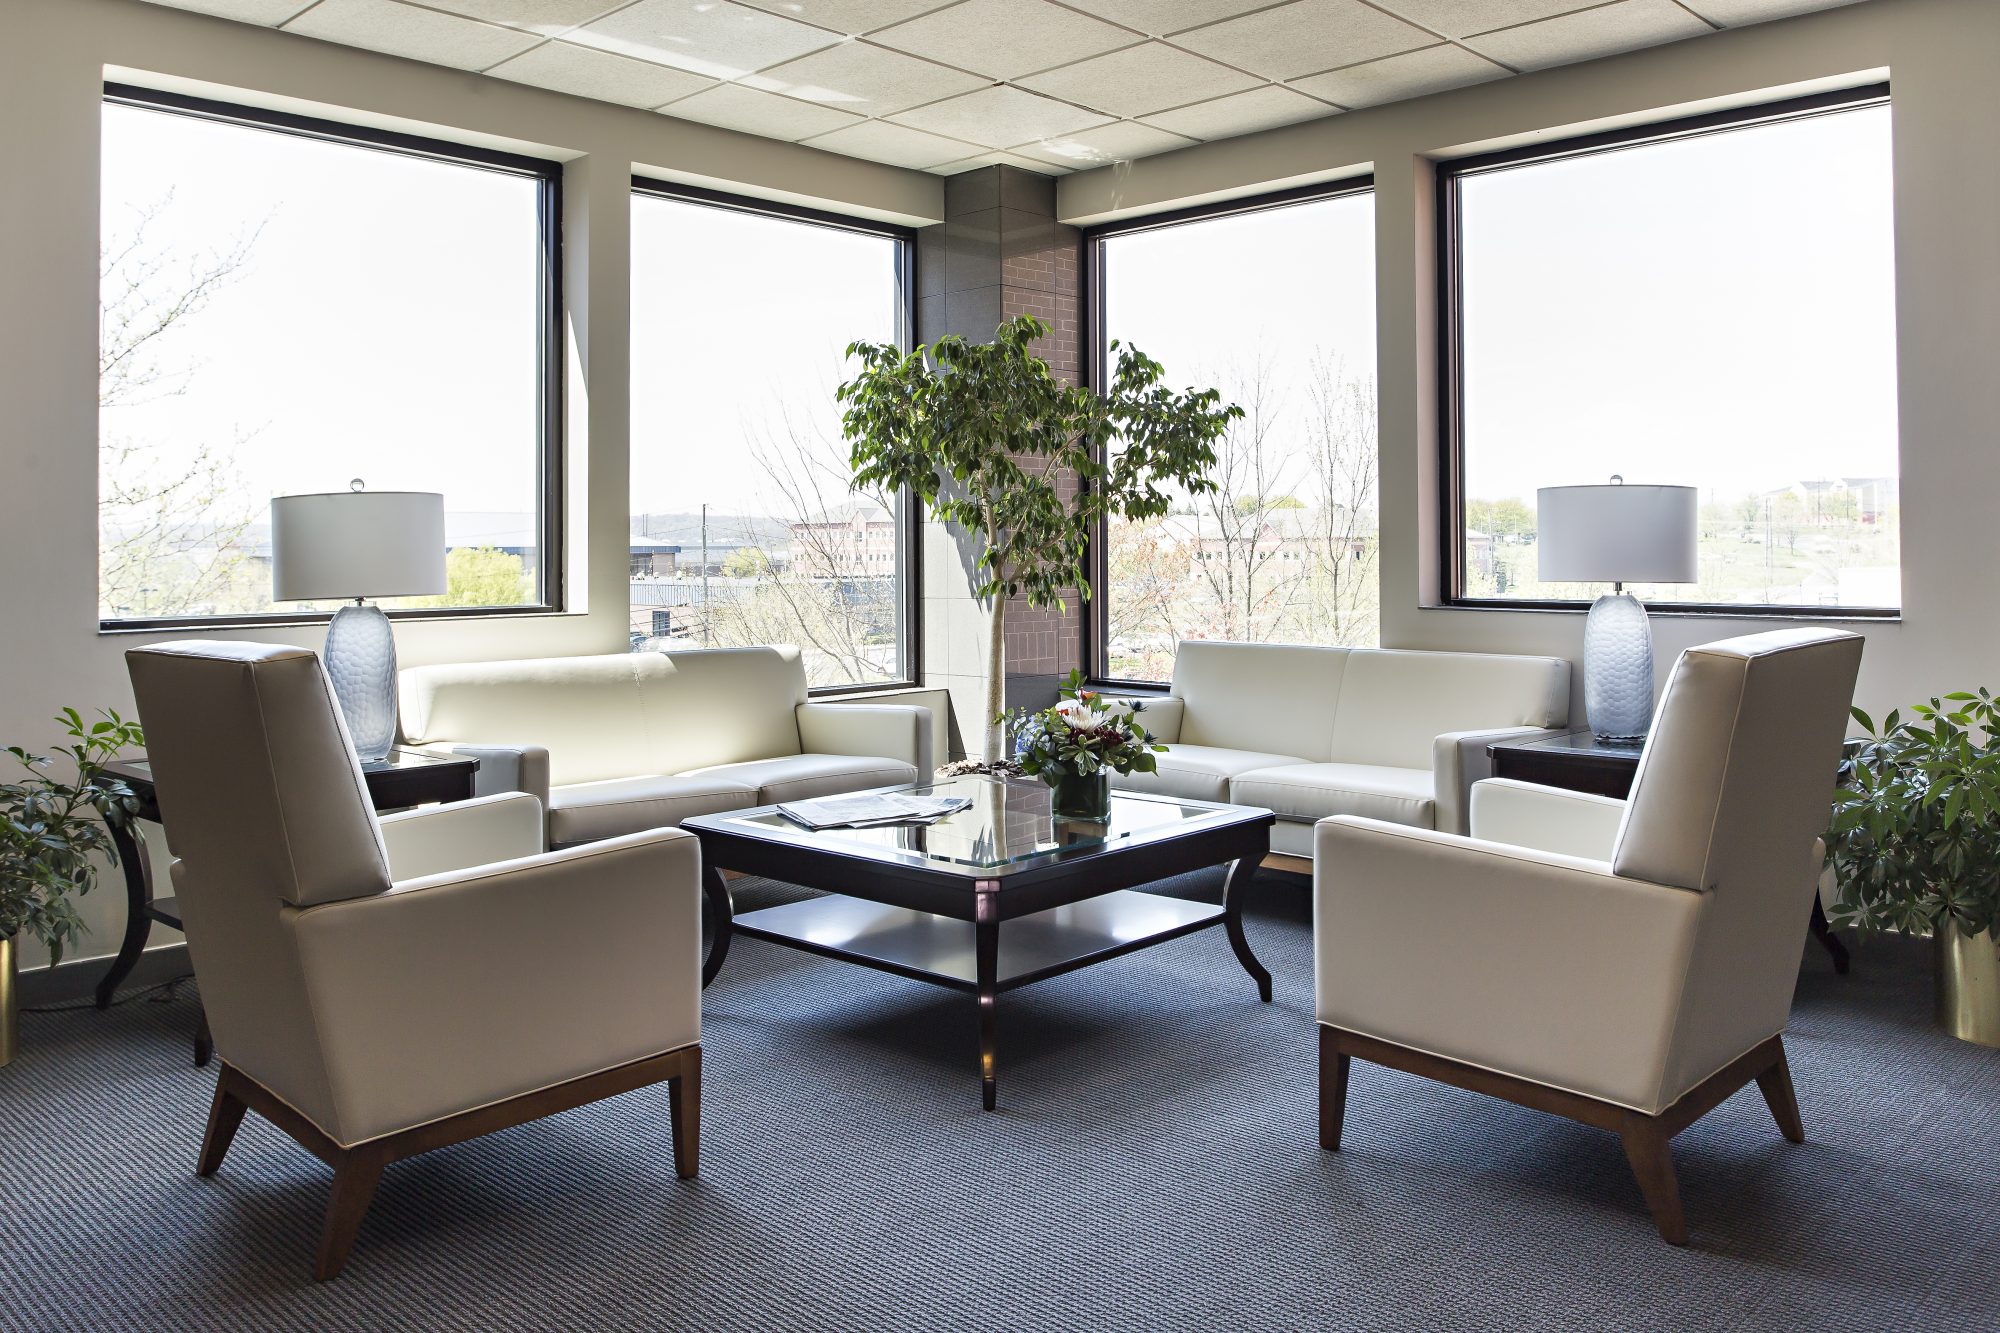 Elegant Office Interior Design